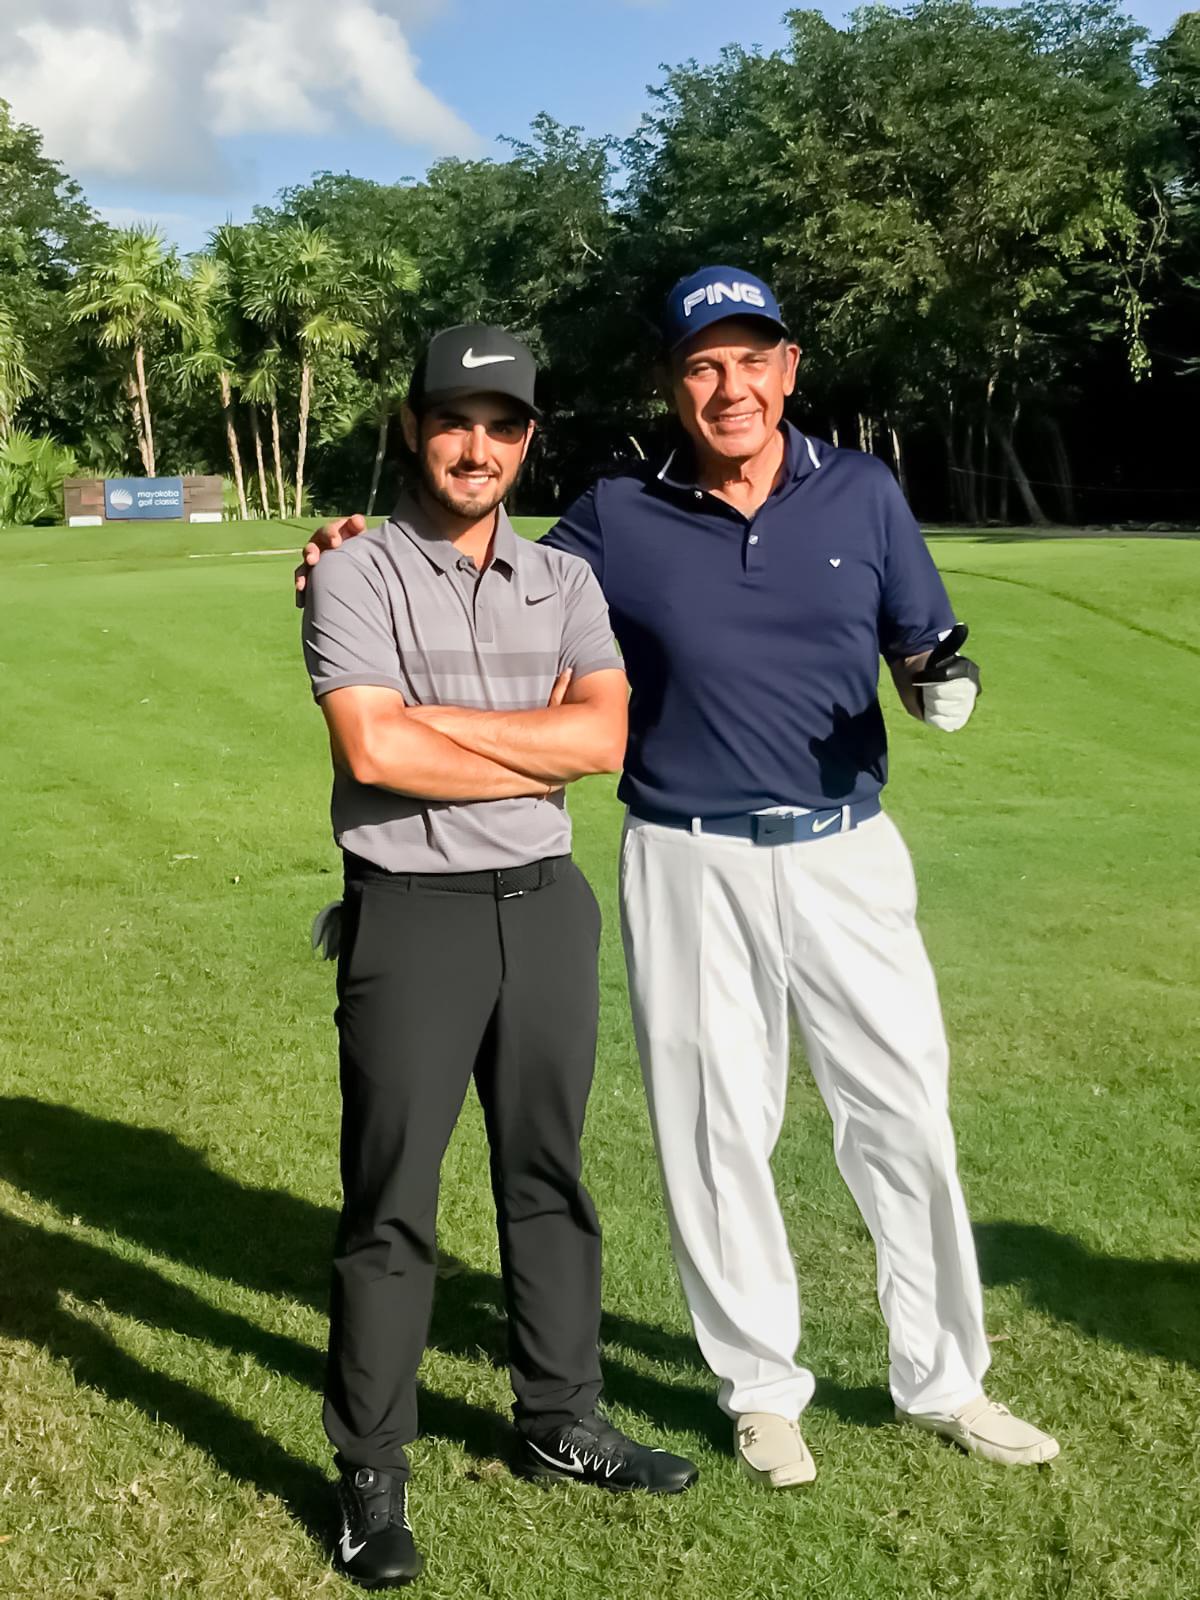 $!Amante del dominó y el golf, Víctor Mohamar recuerda con orgullo el día que compartió el campo con Abraham Ancer, el golfista profesional mexicano que juega en el PGA Tour.